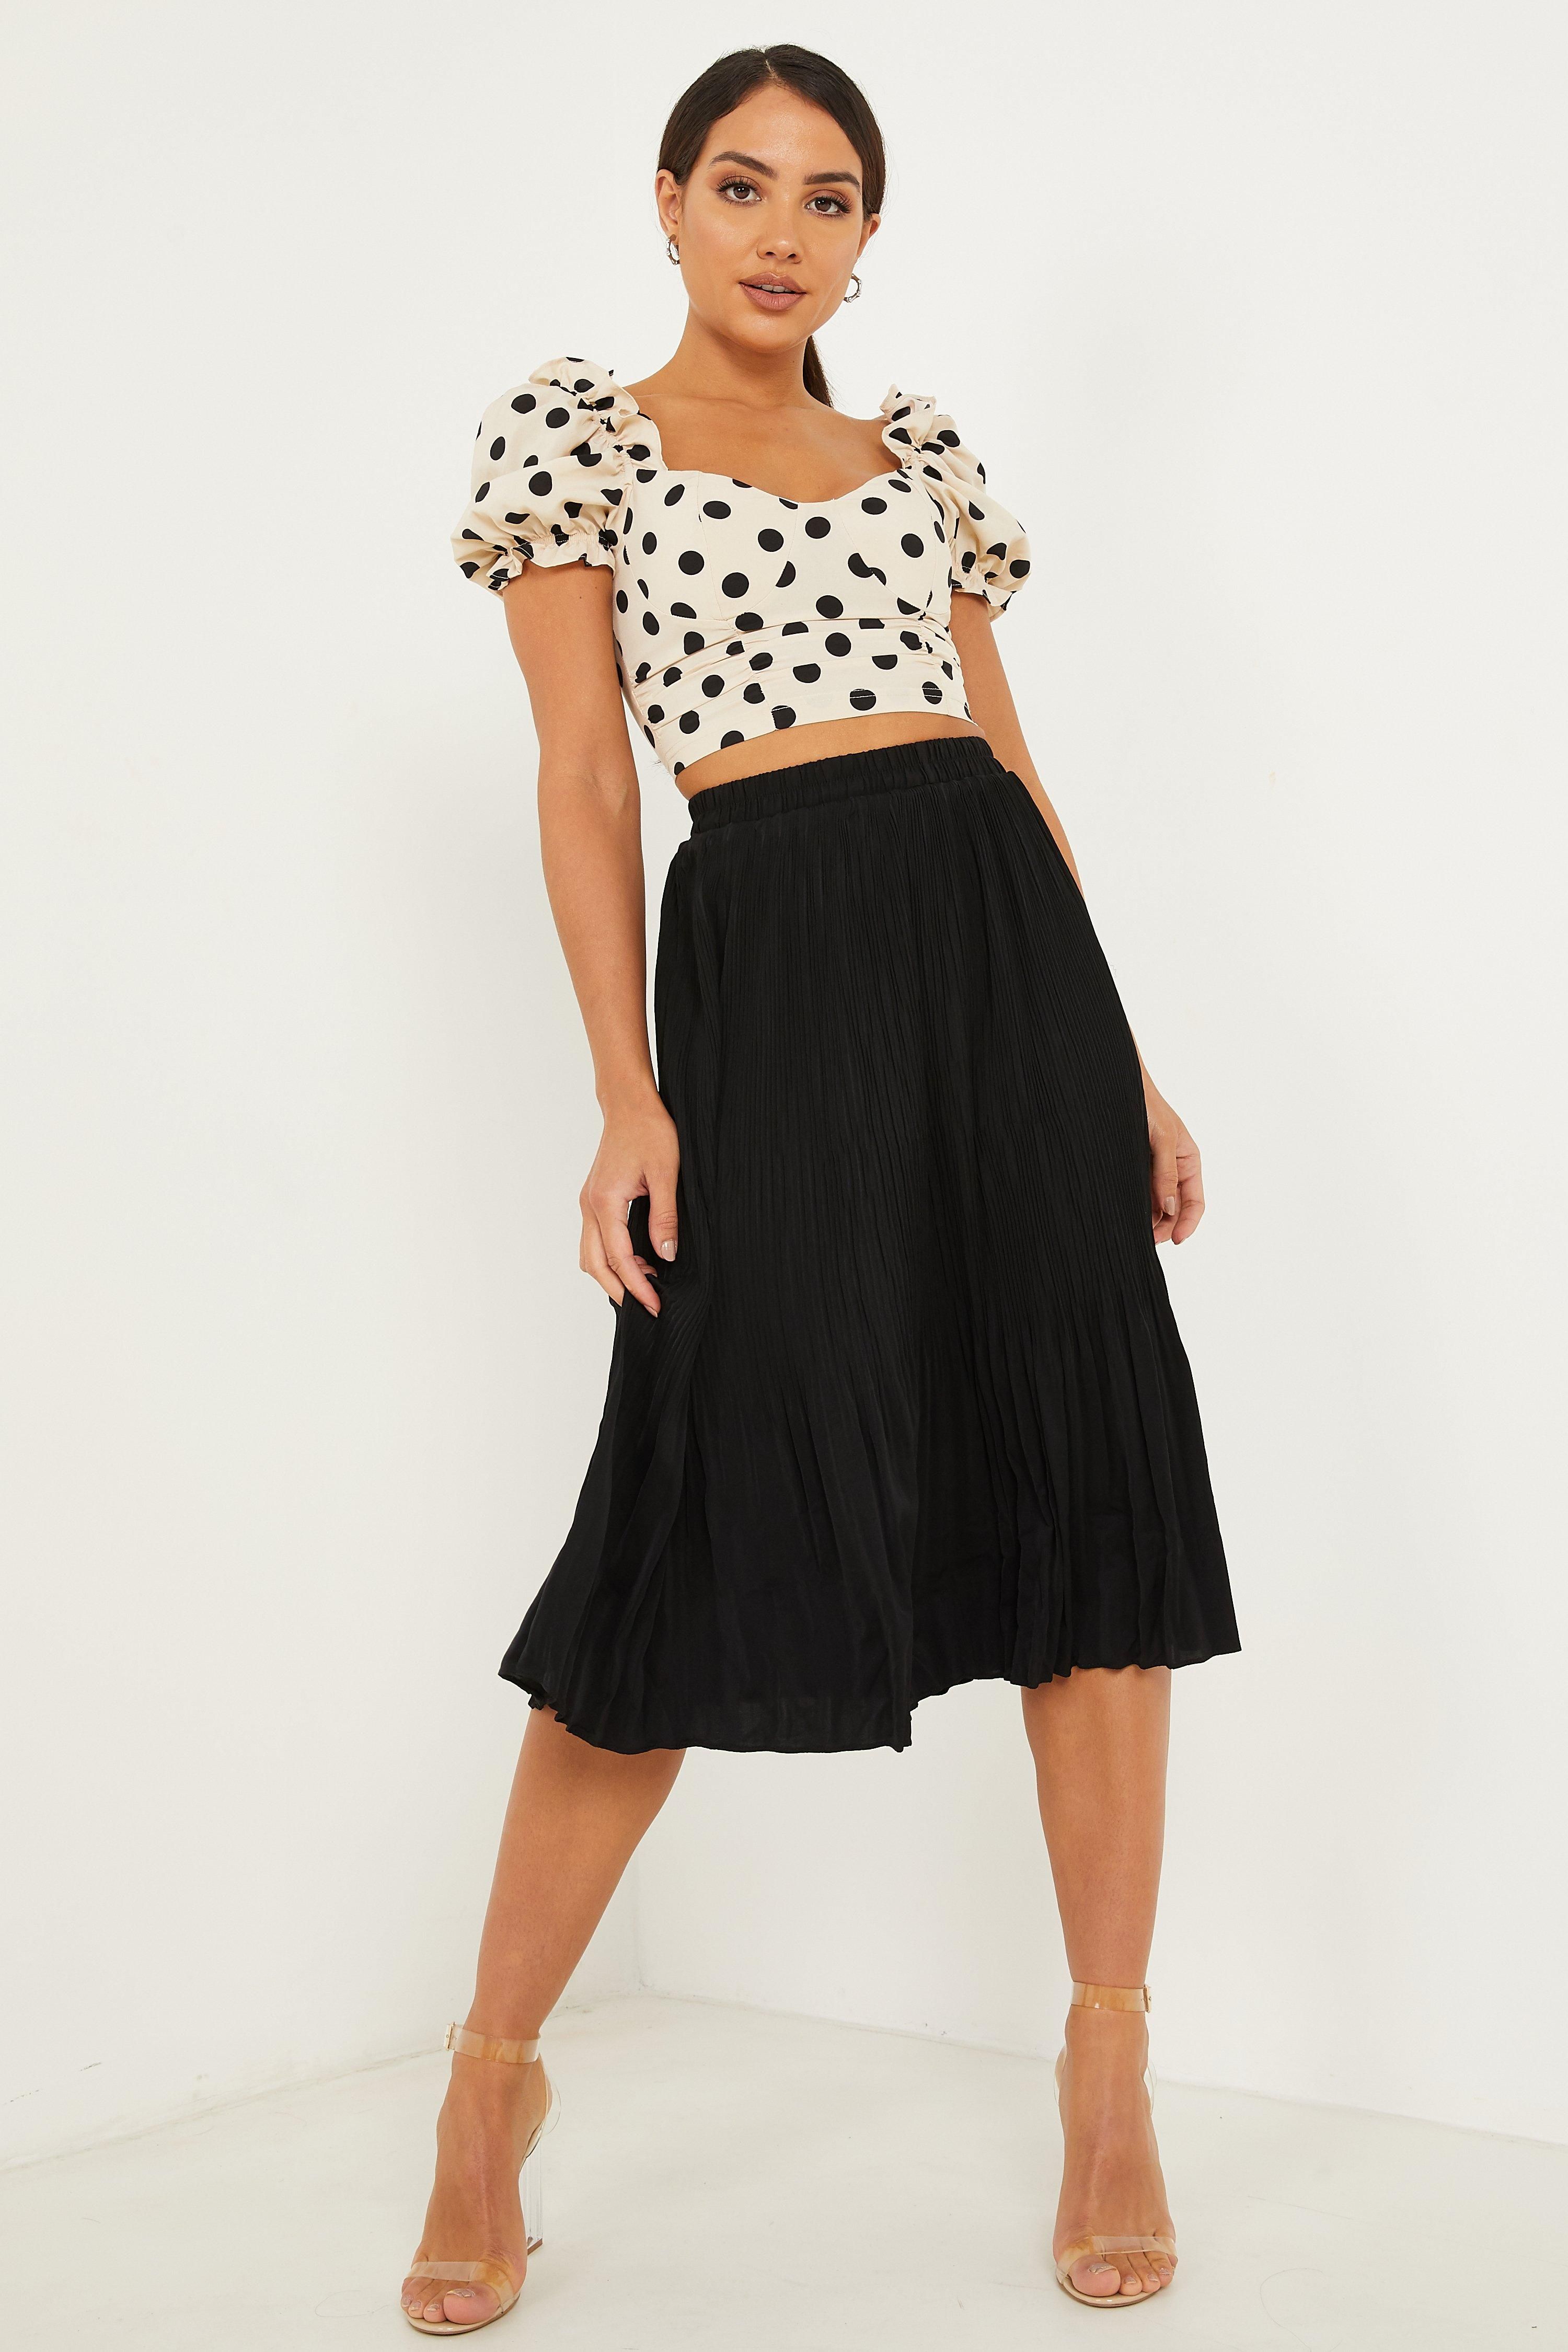 - Pleated skirt   - High waist  - Elasticated waistband  - Midi length  - Length: 78 cm approx  - Model height: 5' 7